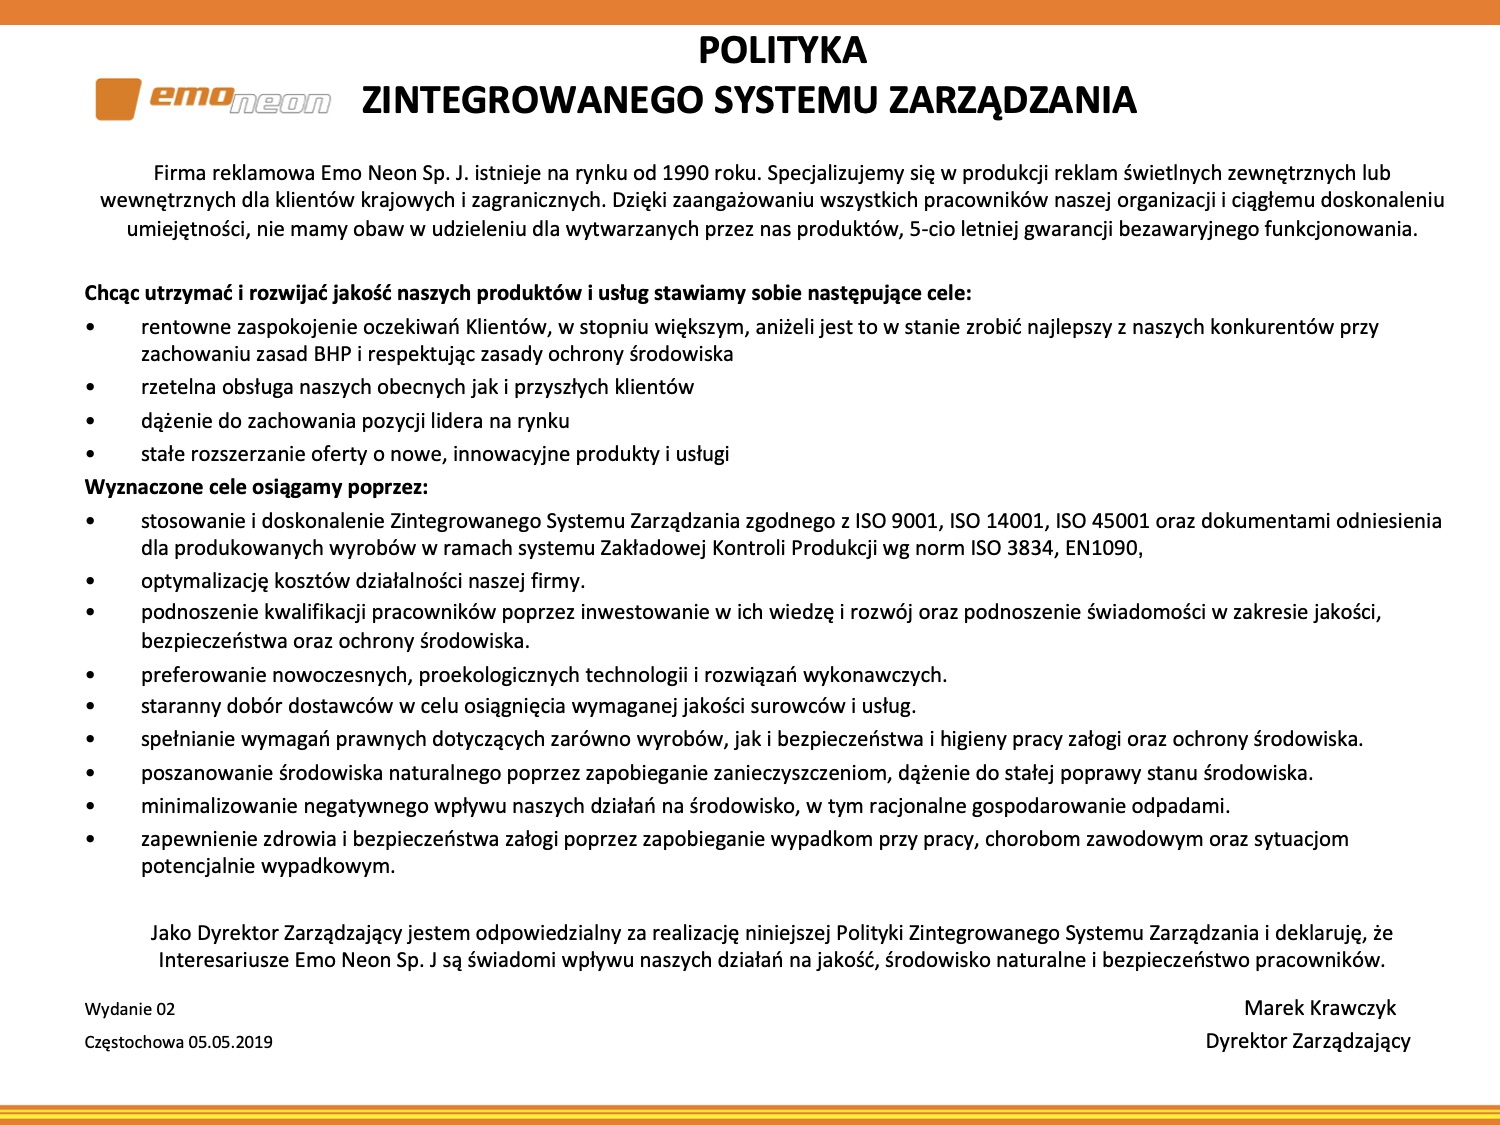 KZSZ- 04 Polityka Zintegrowanego Systemu Zarzadzania